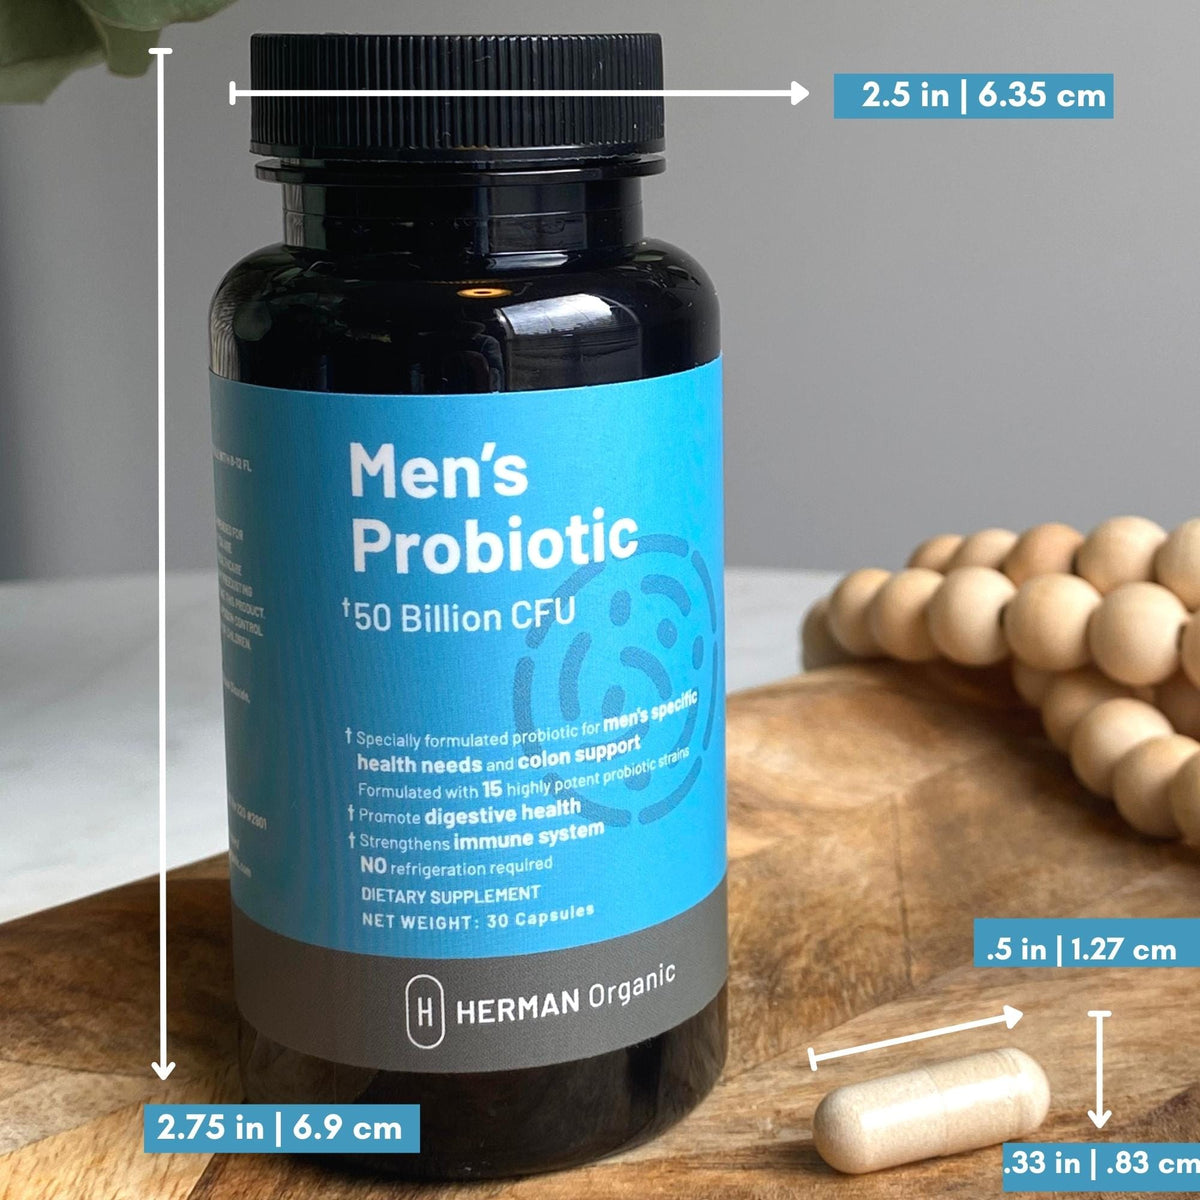 Herman Organic Vitamins &amp; Supplements Herman Organic Men’s Probiotic